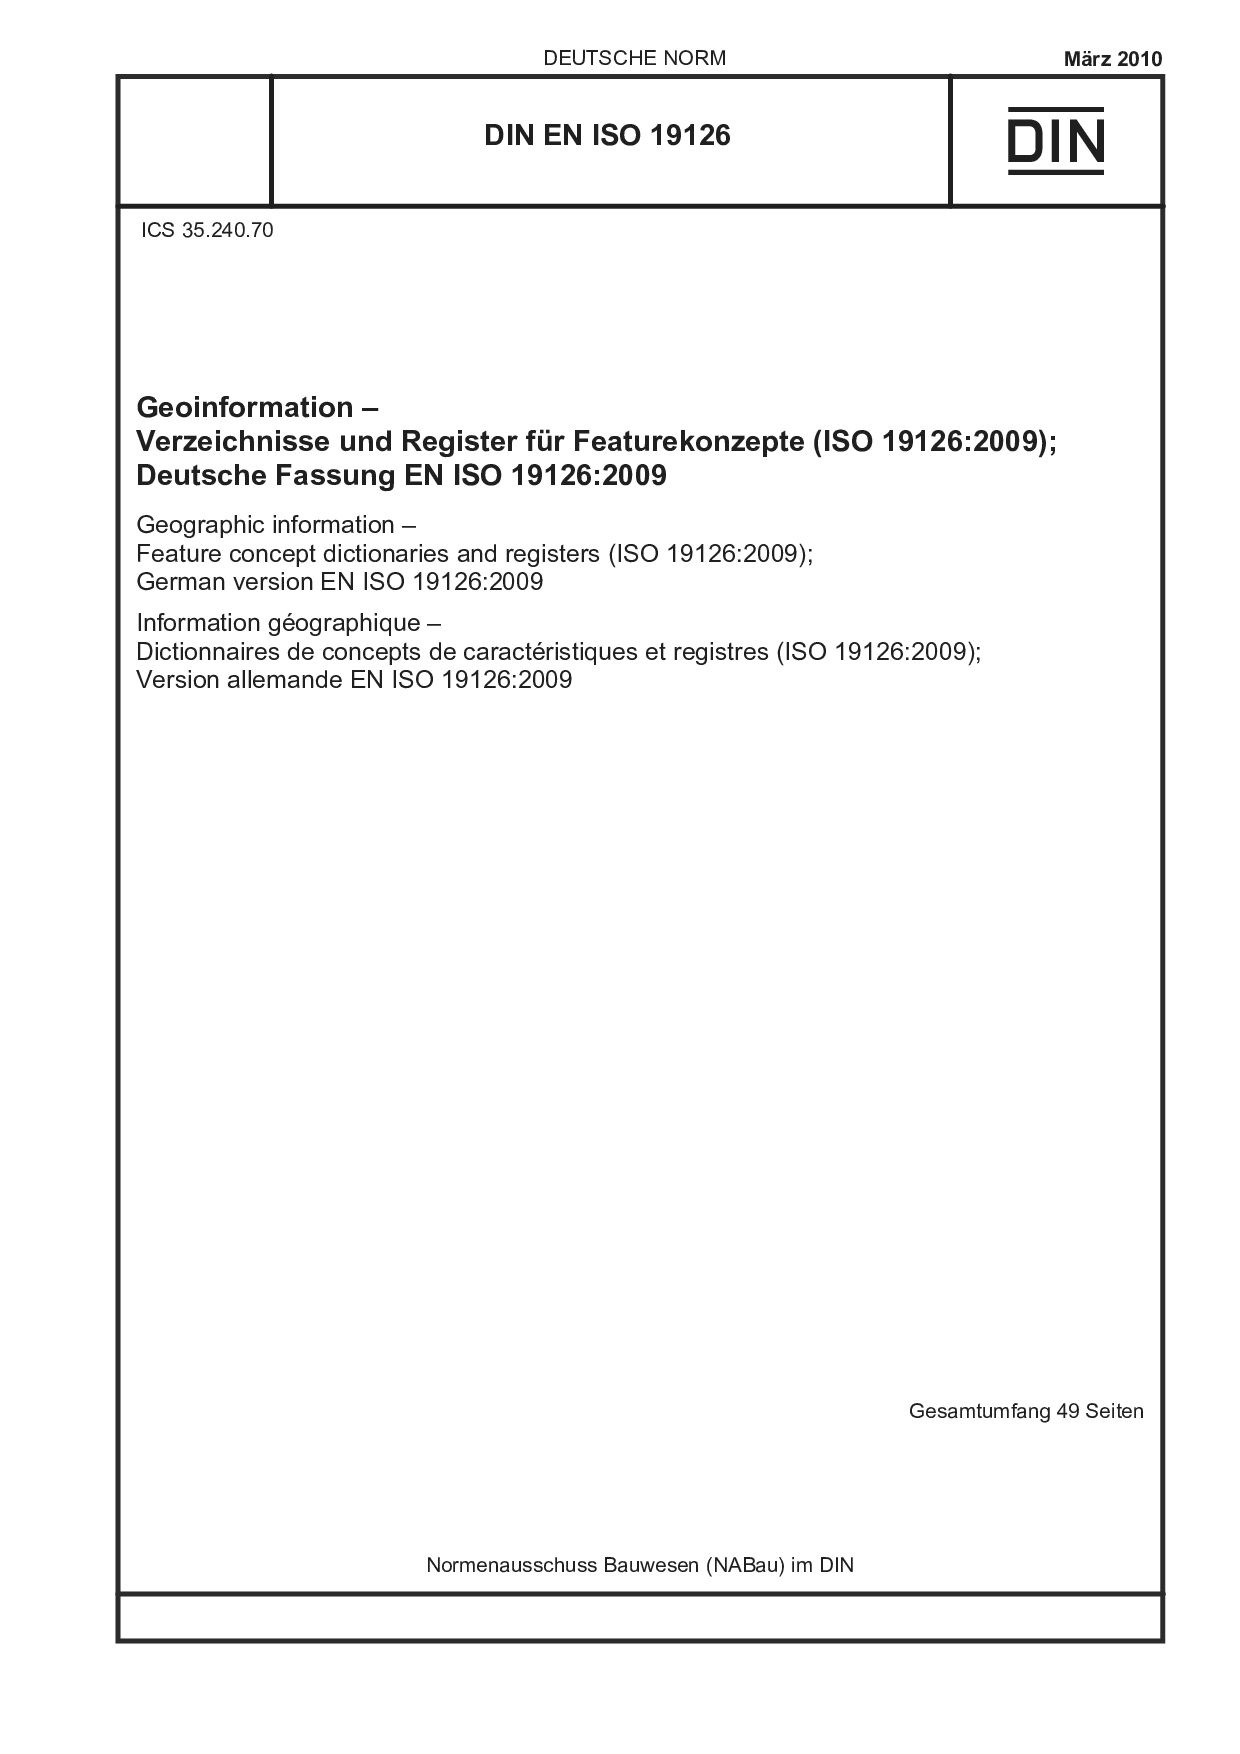 DIN EN ISO 19126:2010封面图